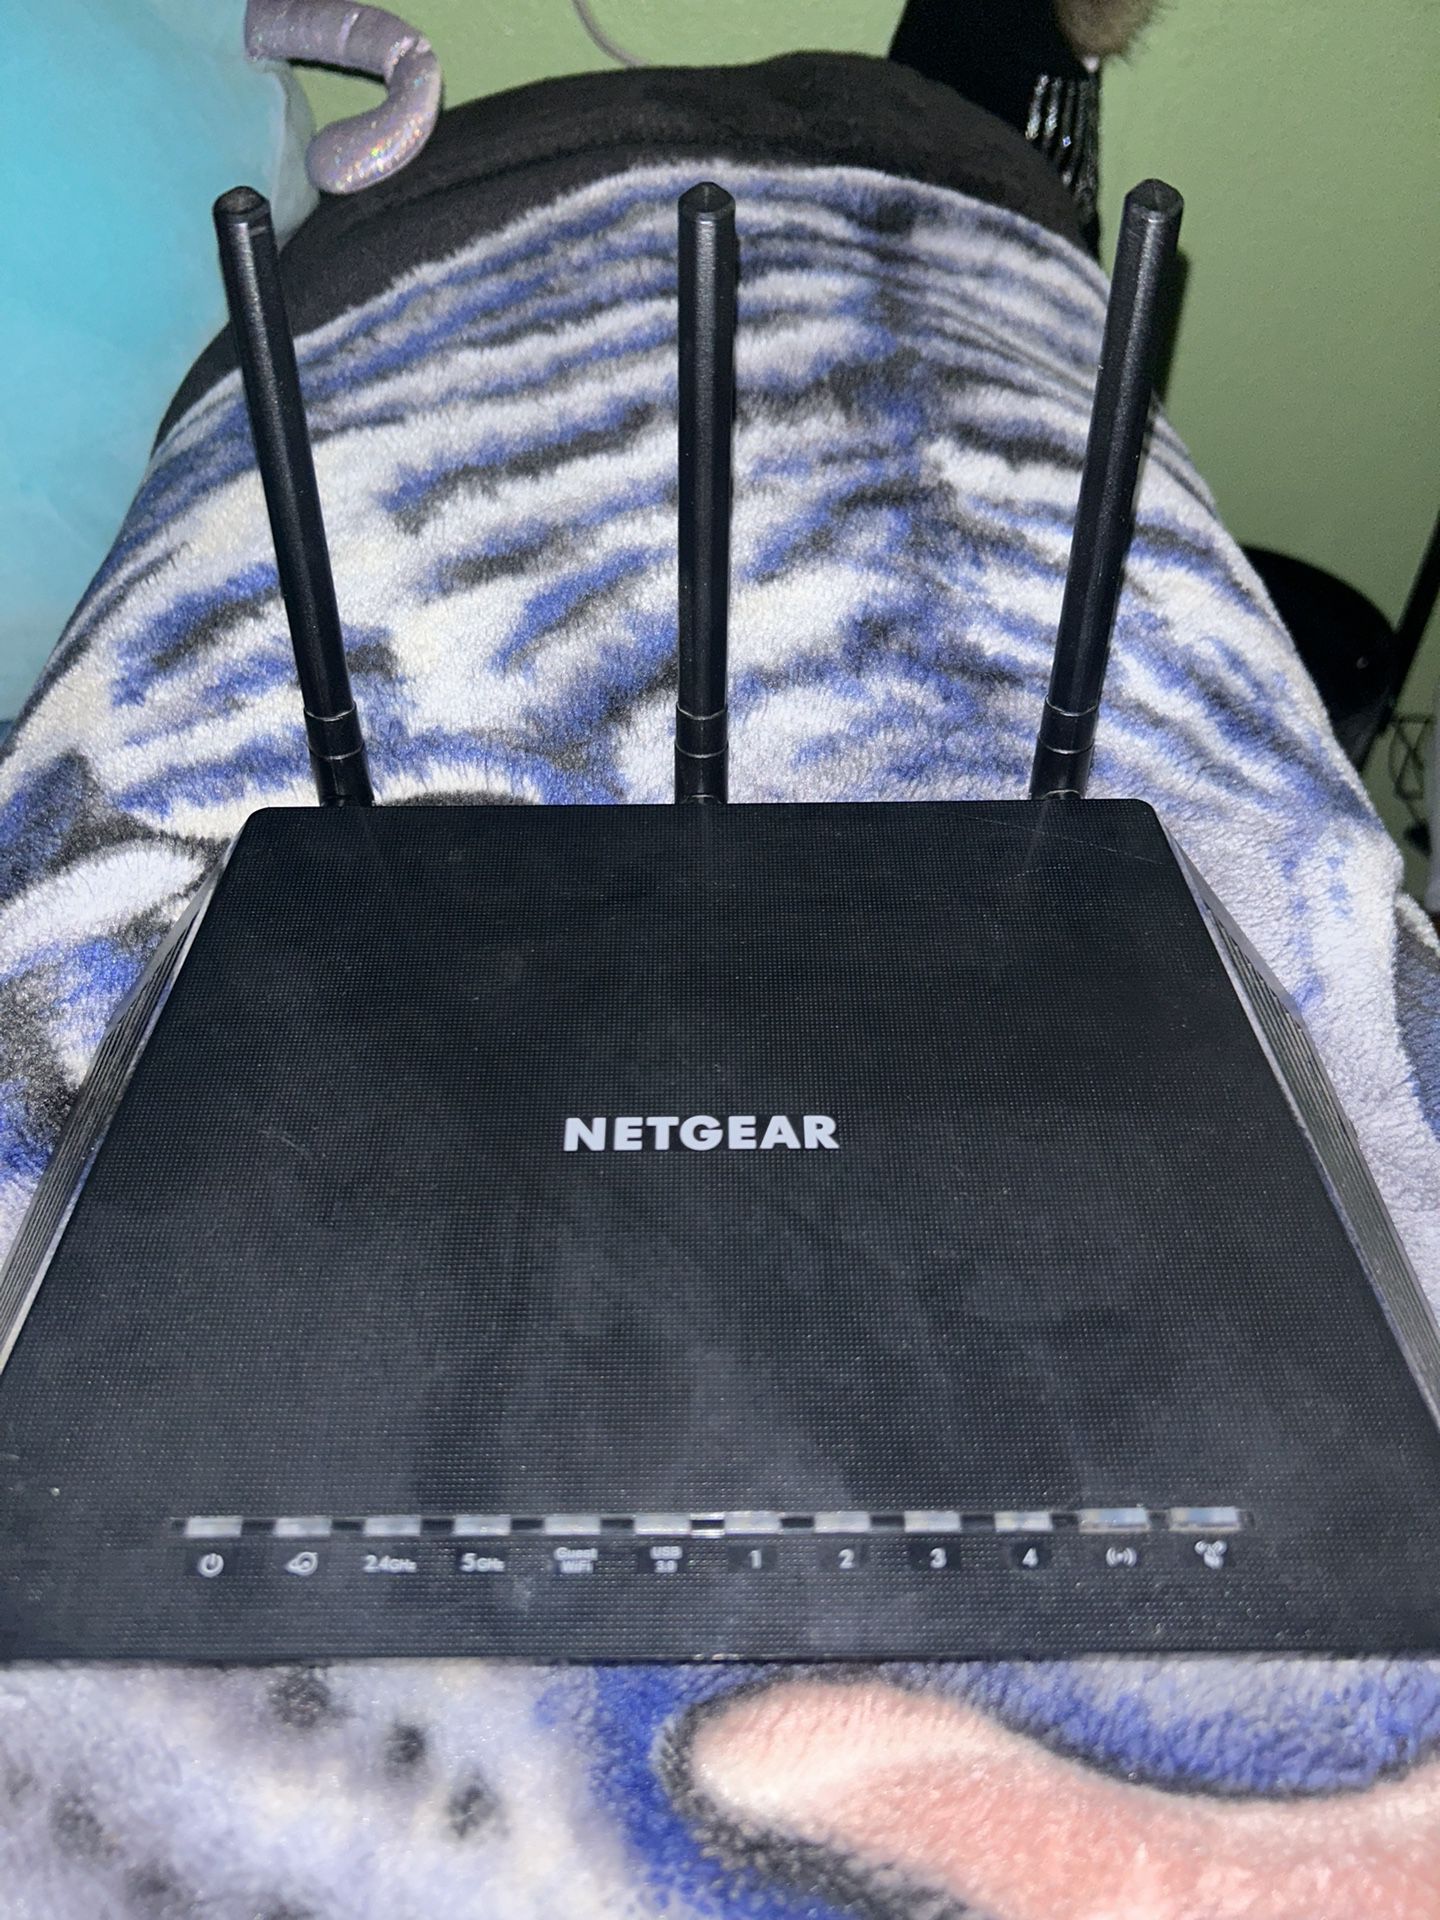 Netgear Nighthawk Router and Netgear Modemn